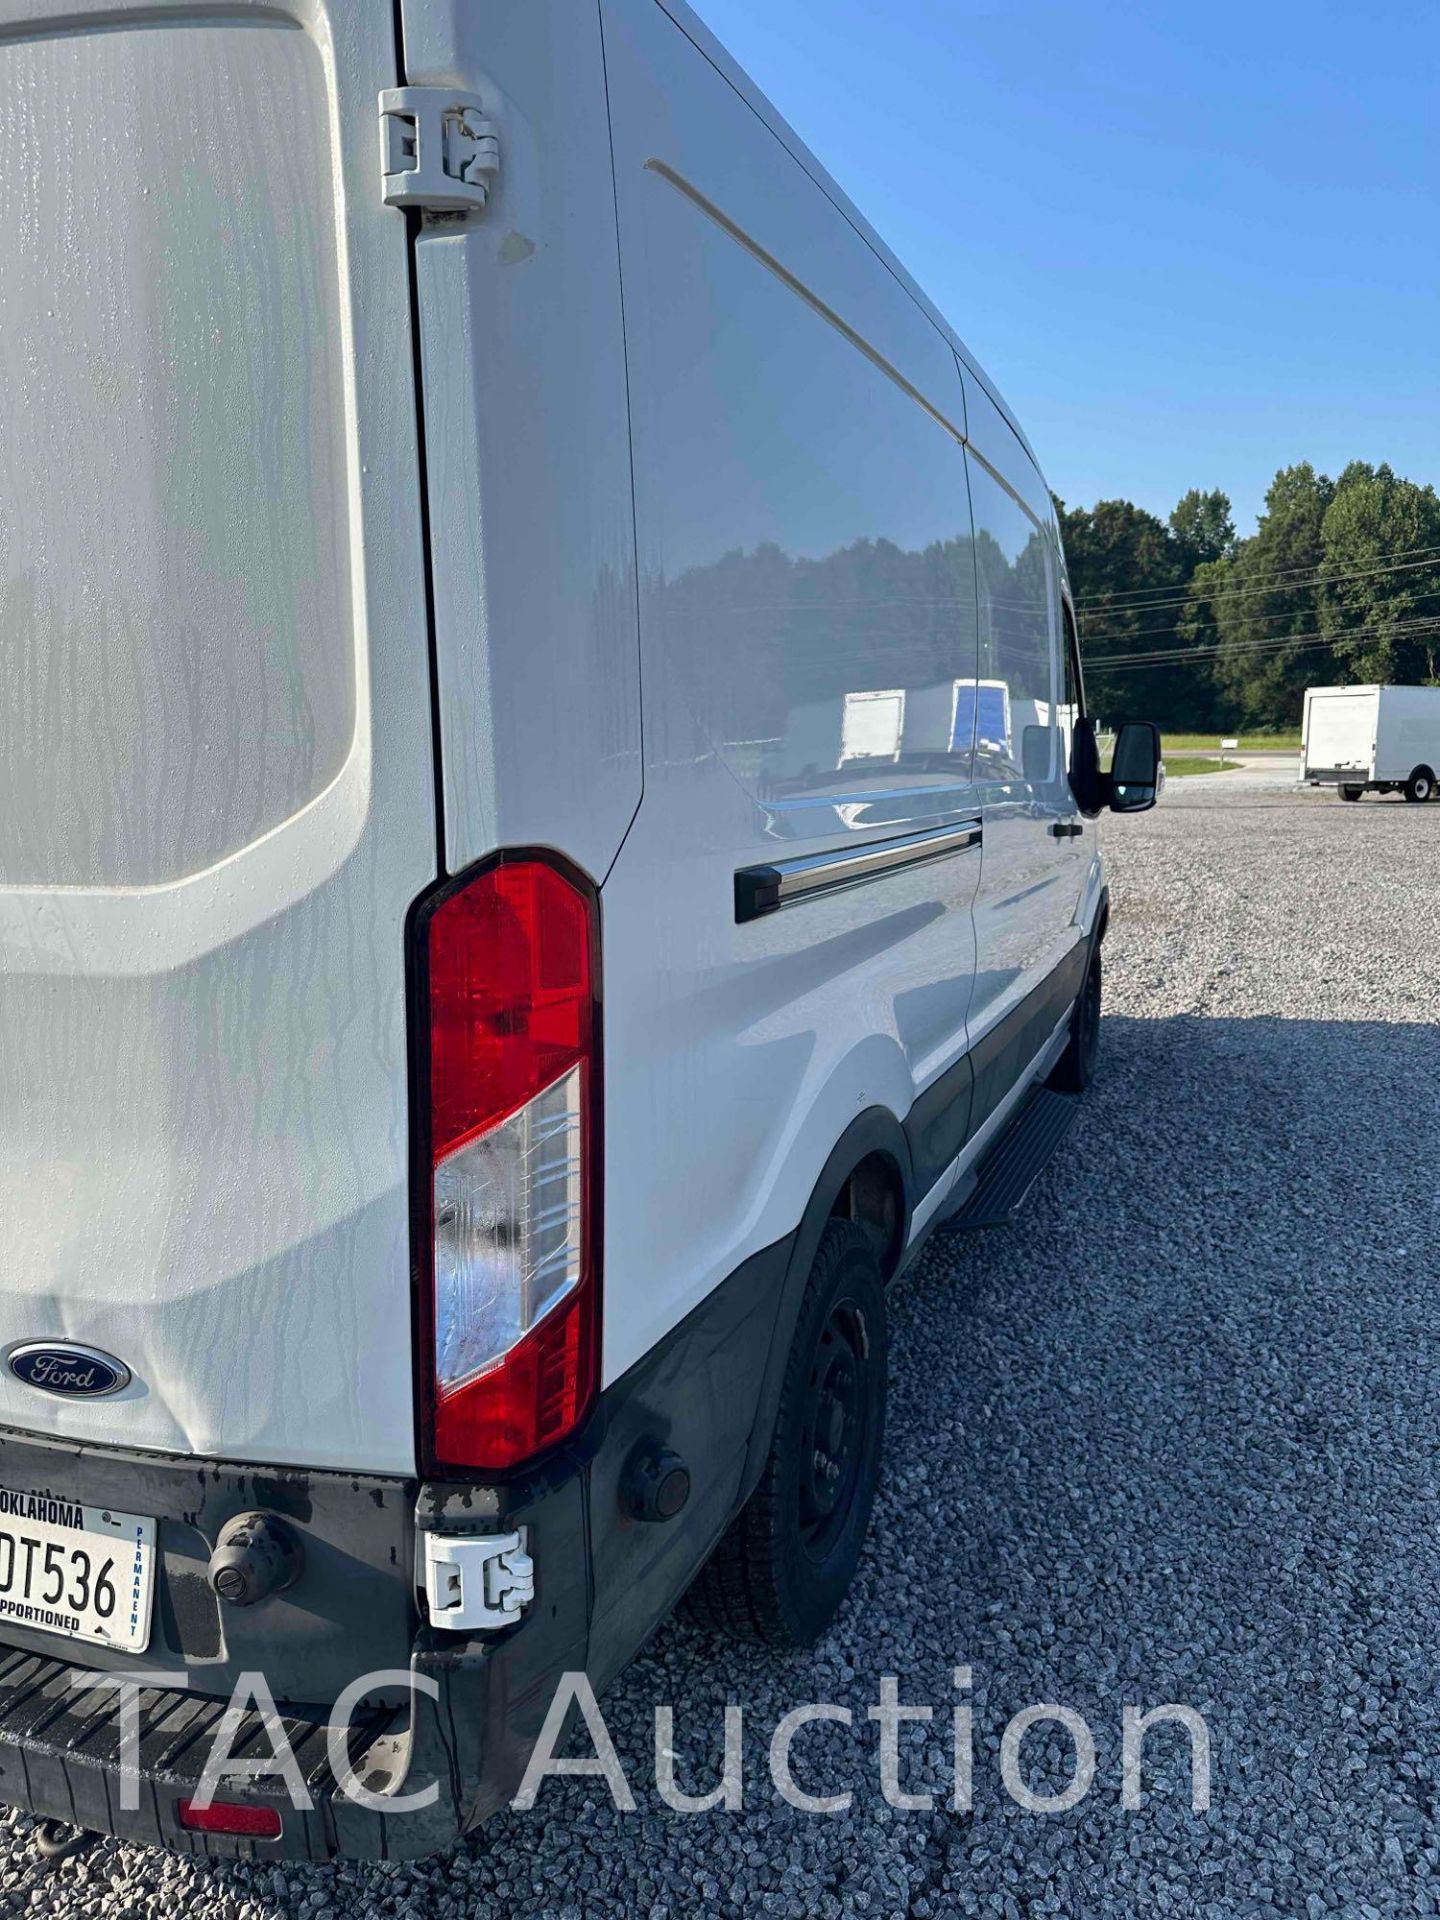 2019 Ford Transit 150 Cargo Van - Image 4 of 25